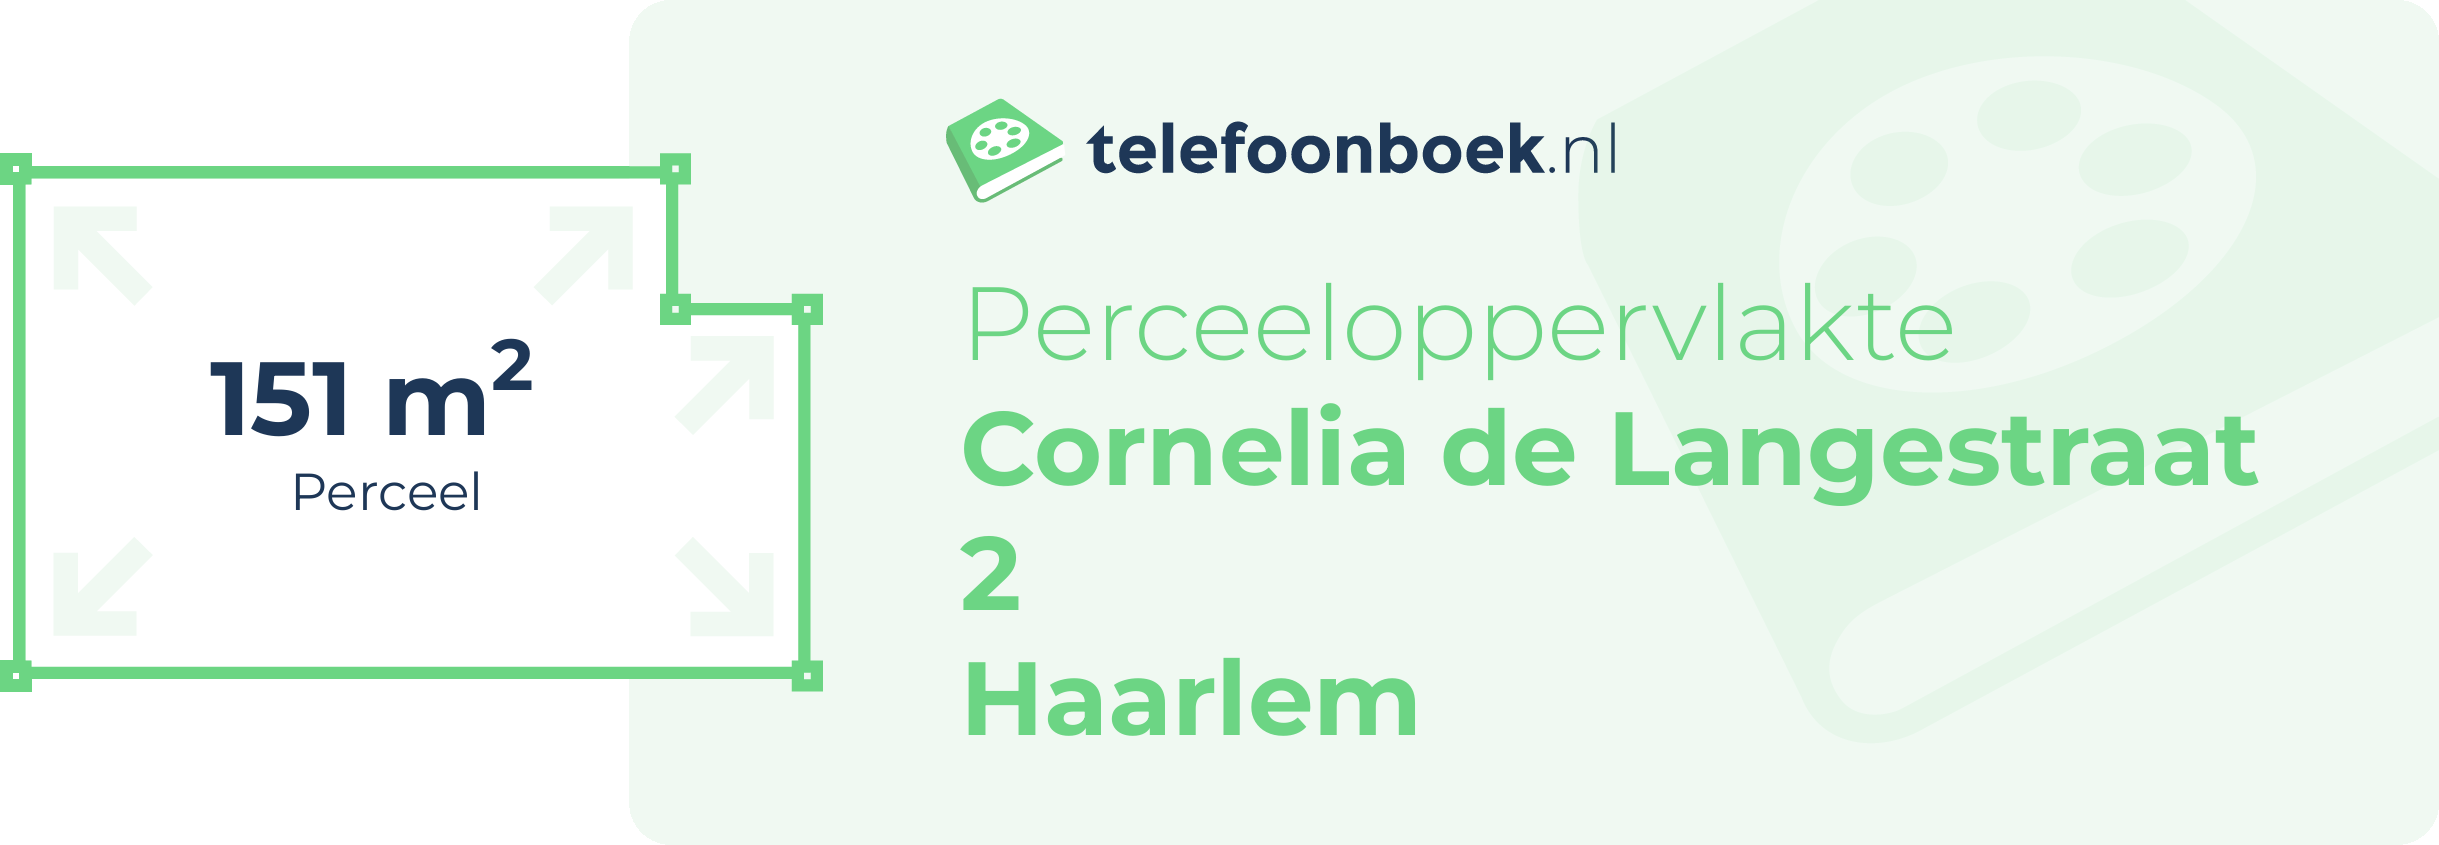 Perceeloppervlakte Cornelia De Langestraat 2 Haarlem